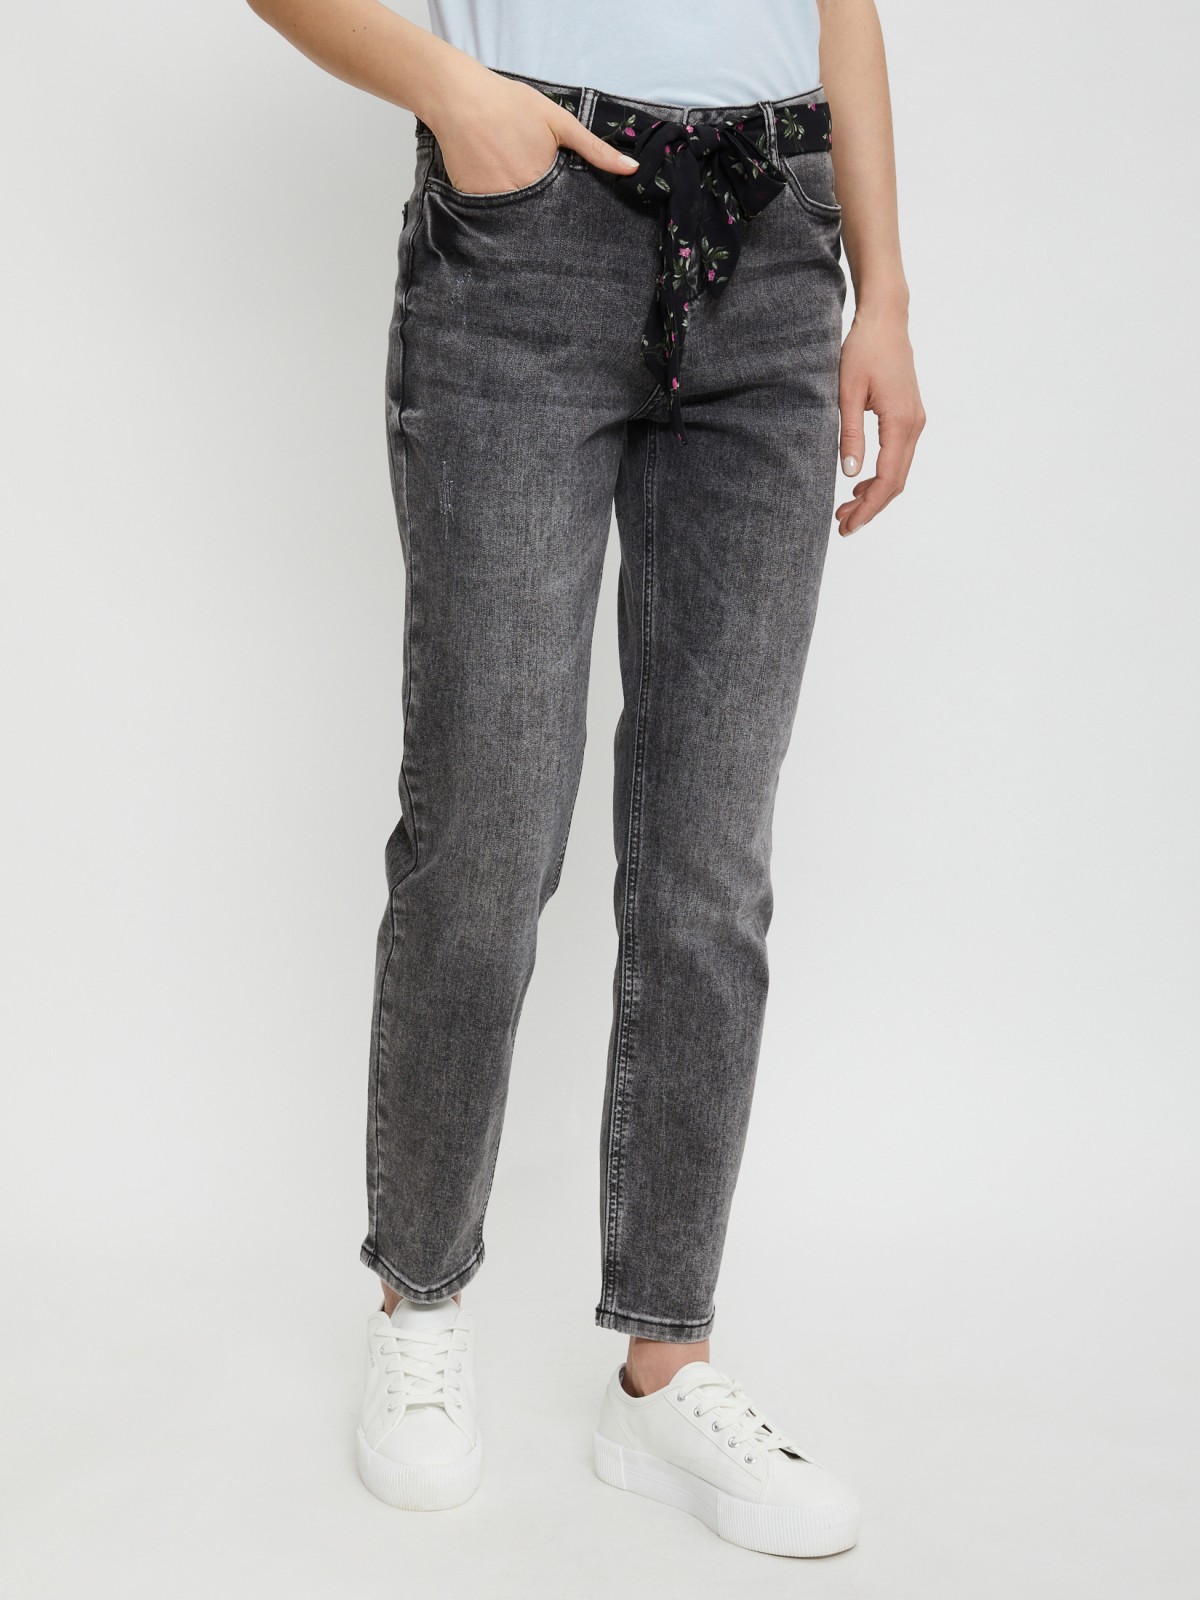 Брюки джинсовые zolla 02121714S183, цвет темно-серый, размер 25 - фото 2